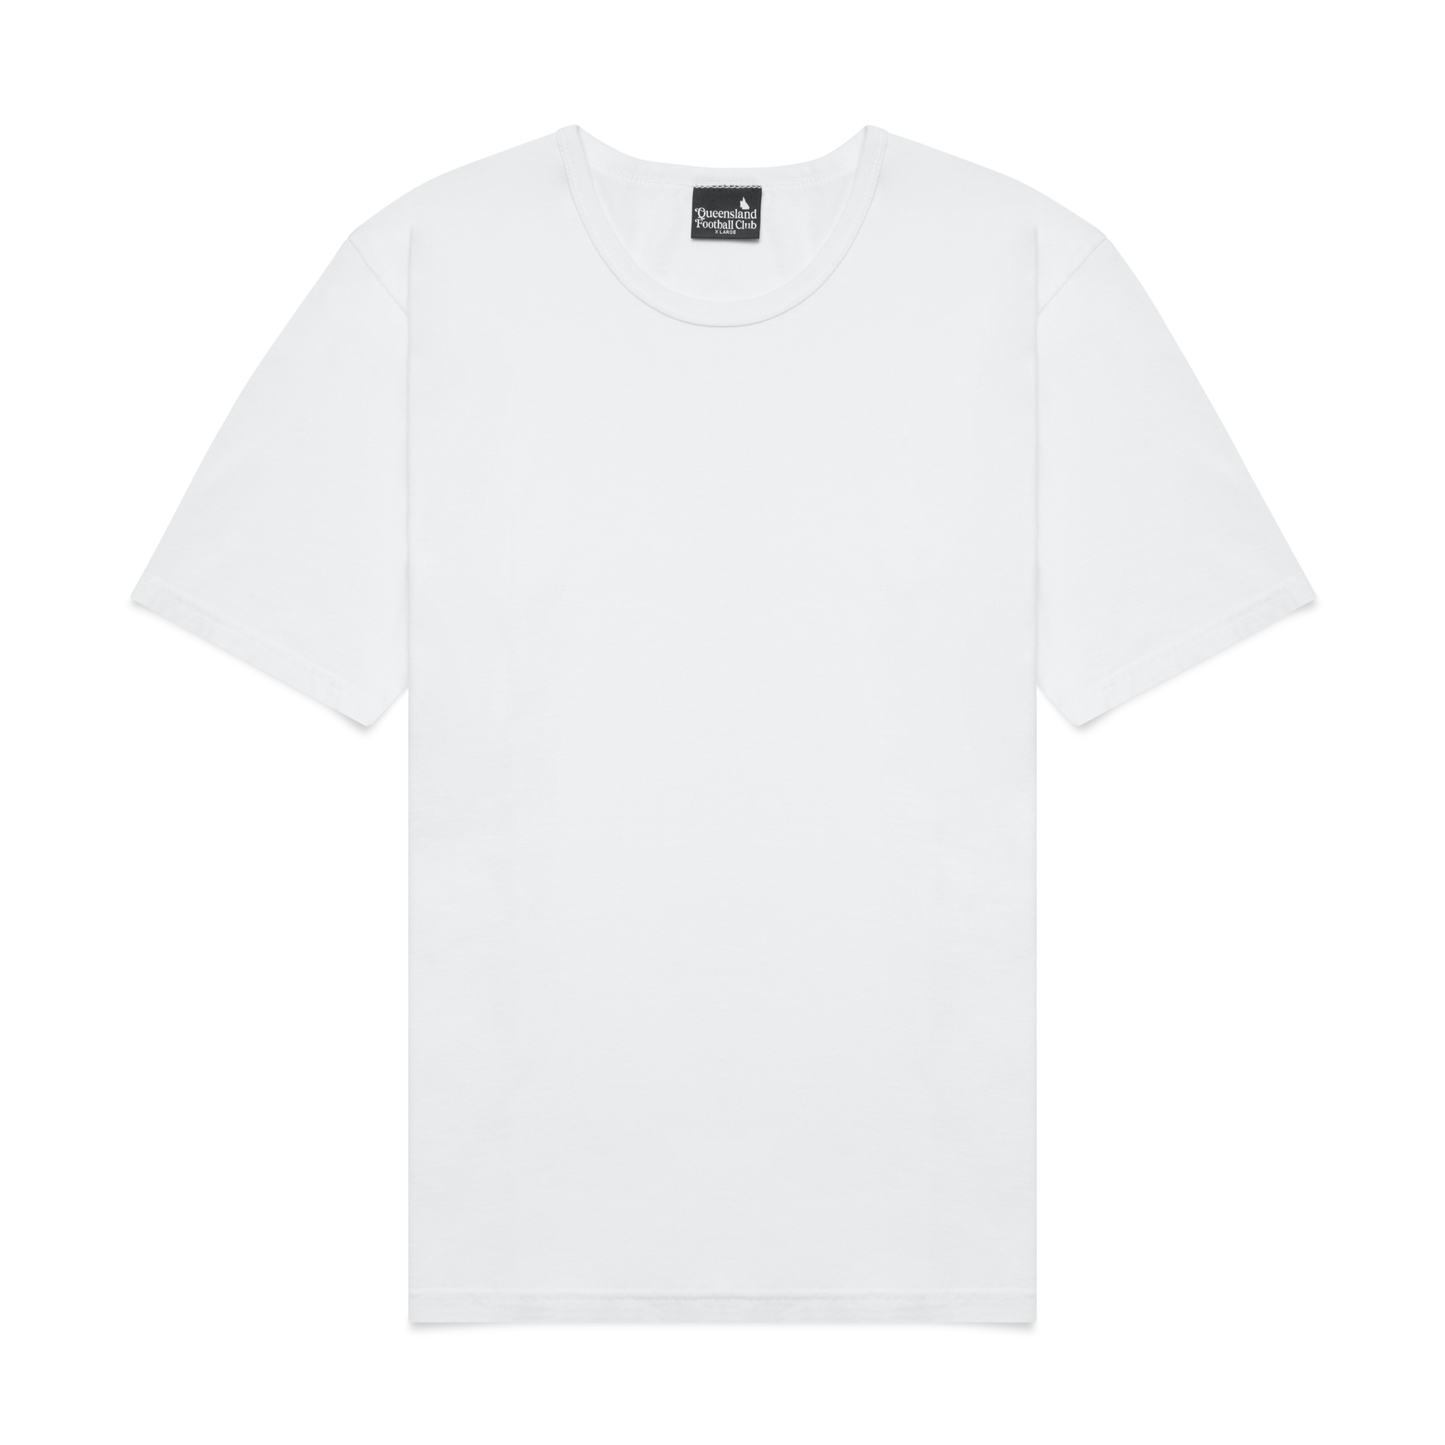 All Australian T-Shirt (White 2-pack)